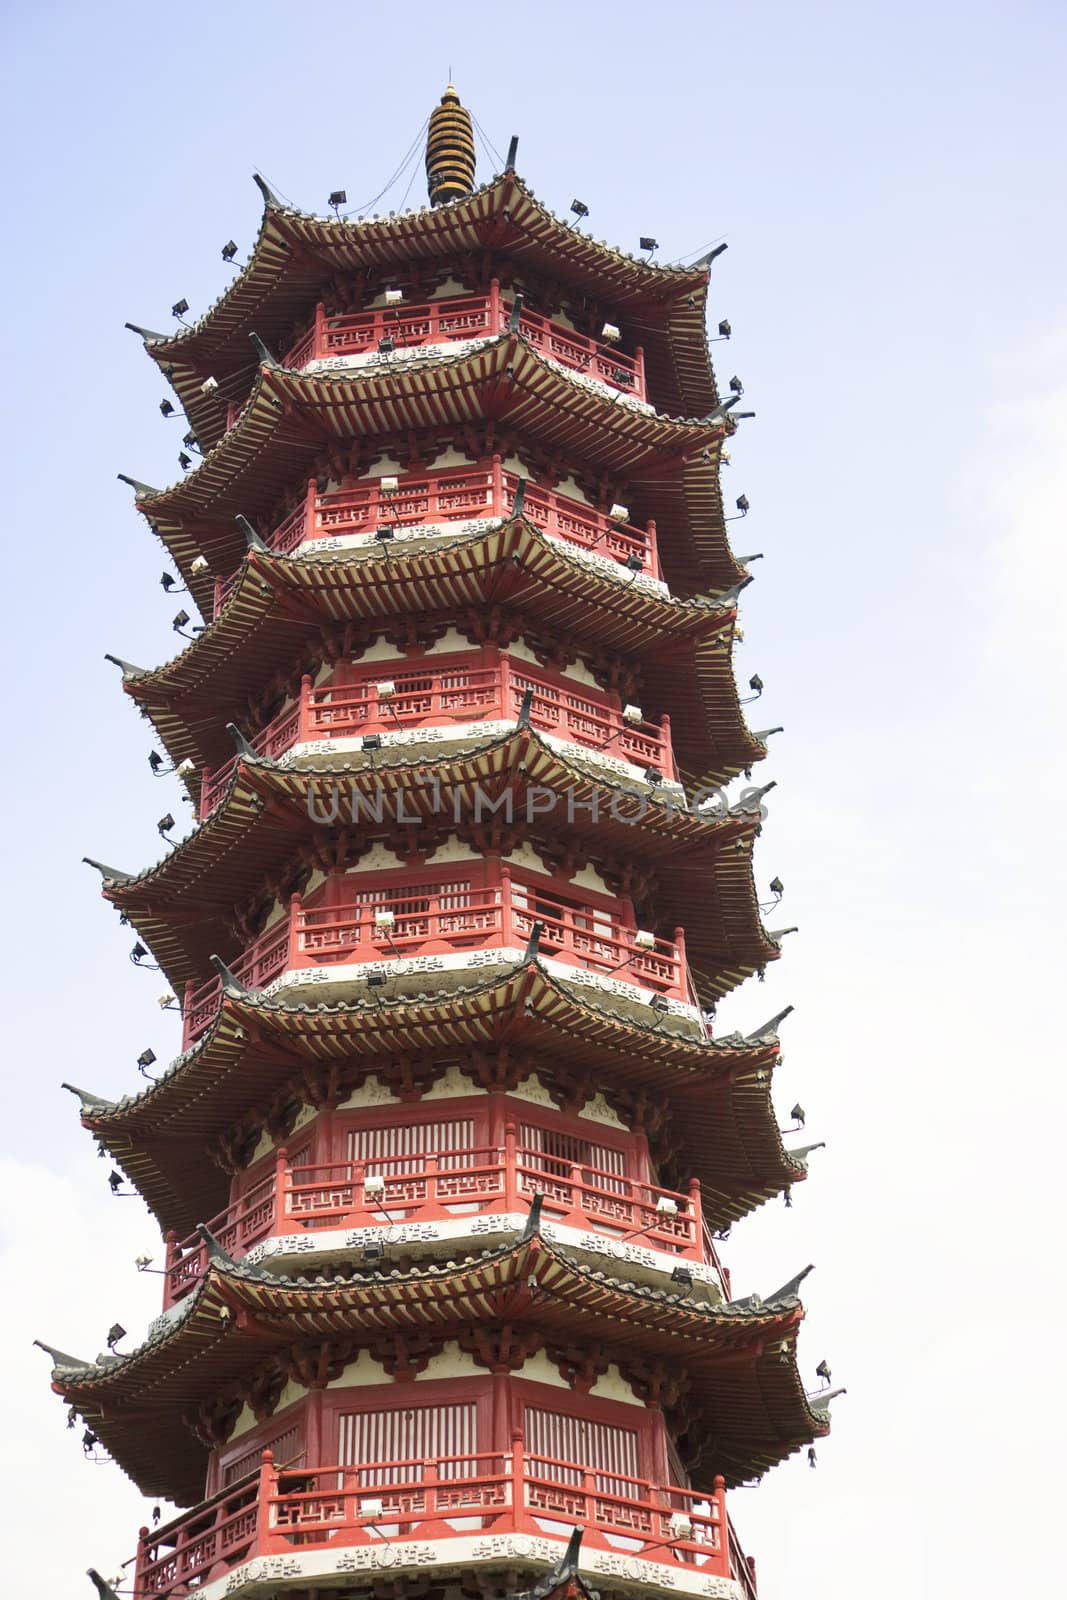 Mulong Lake Pagoda, Guilin, China by shariffc